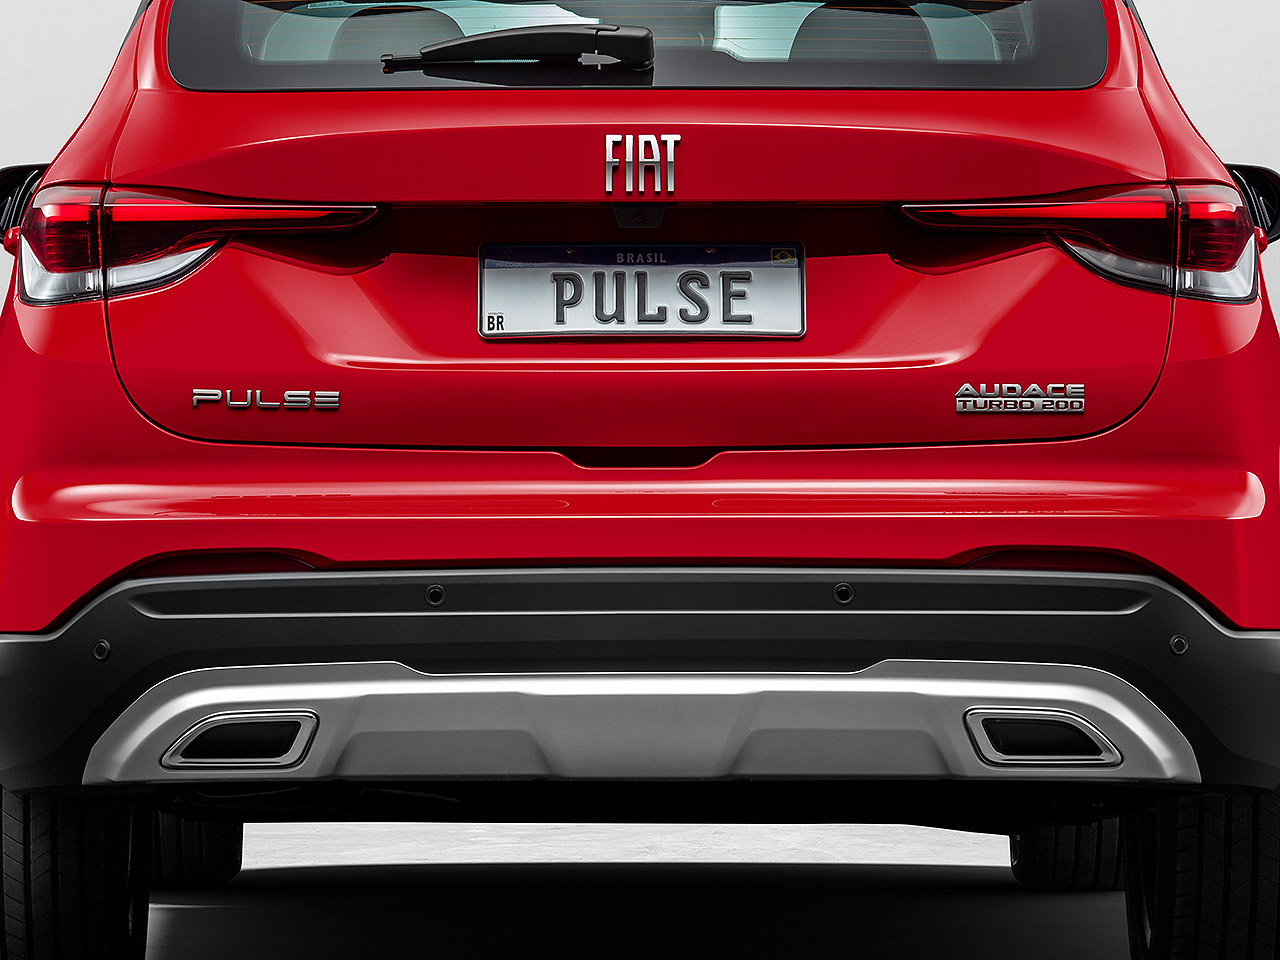 Acima detalhe do Fiat Pulse na versão Audace